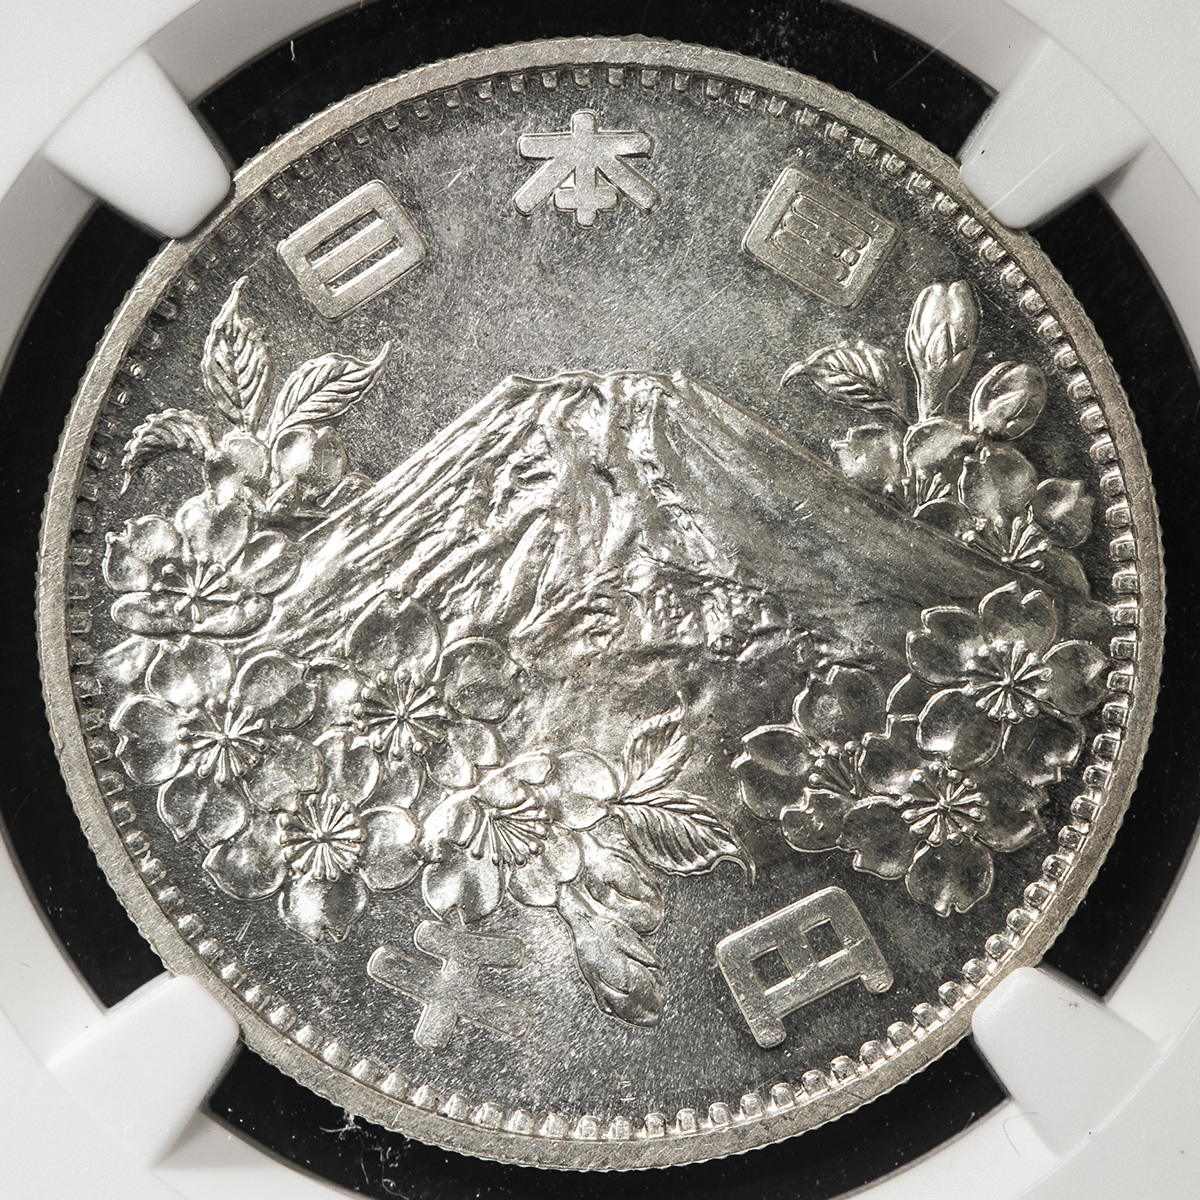 東京オリンピック記念 1000円銀貨 1964年 NGC MS65 トーン - 旧貨幣 